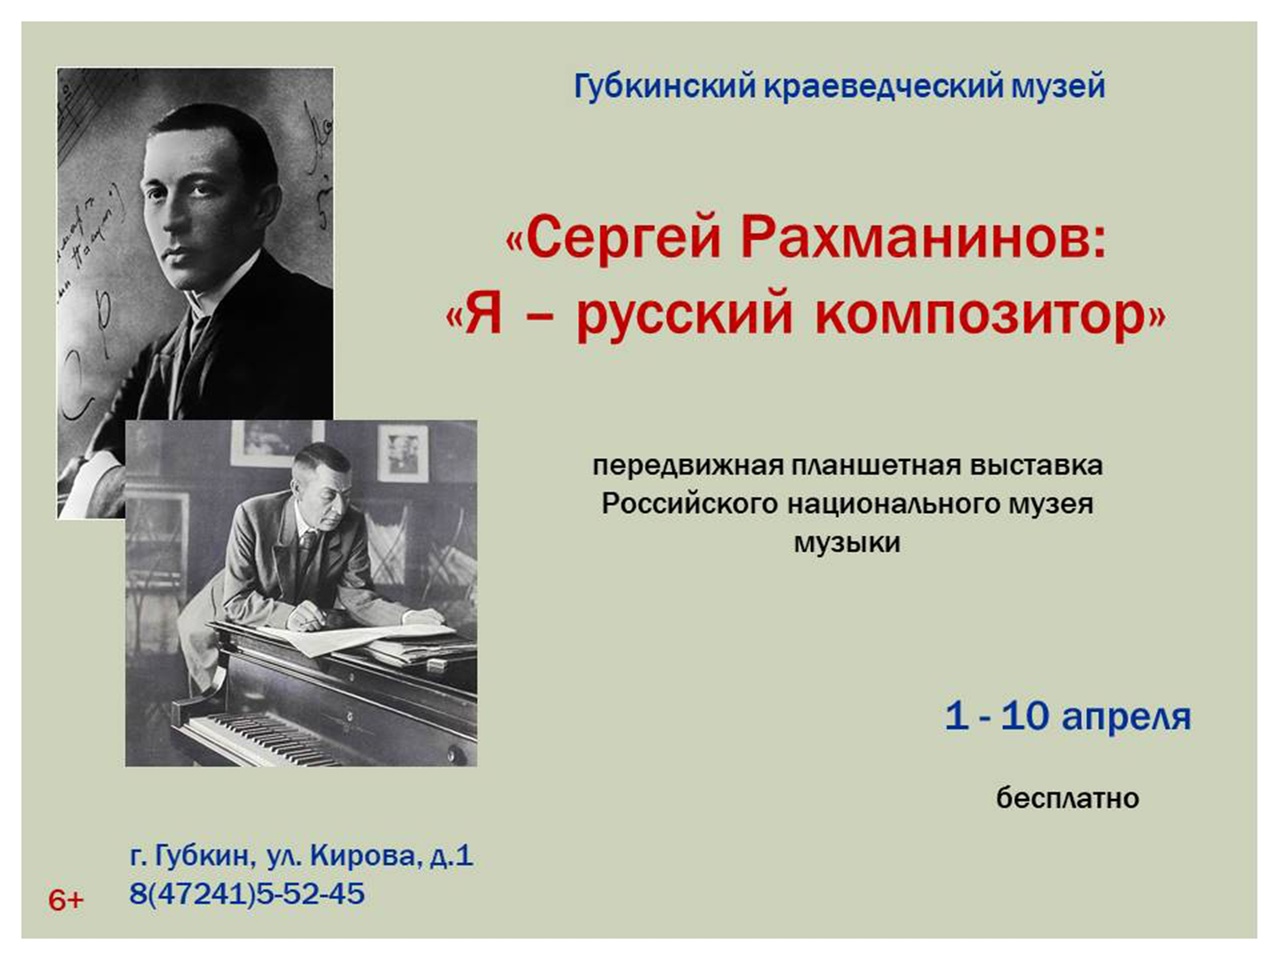 В Губкинском краеведческом музее начинает работать мультимедийная экспозиция «Сергей Рахманинов: «Я - русский композитор».